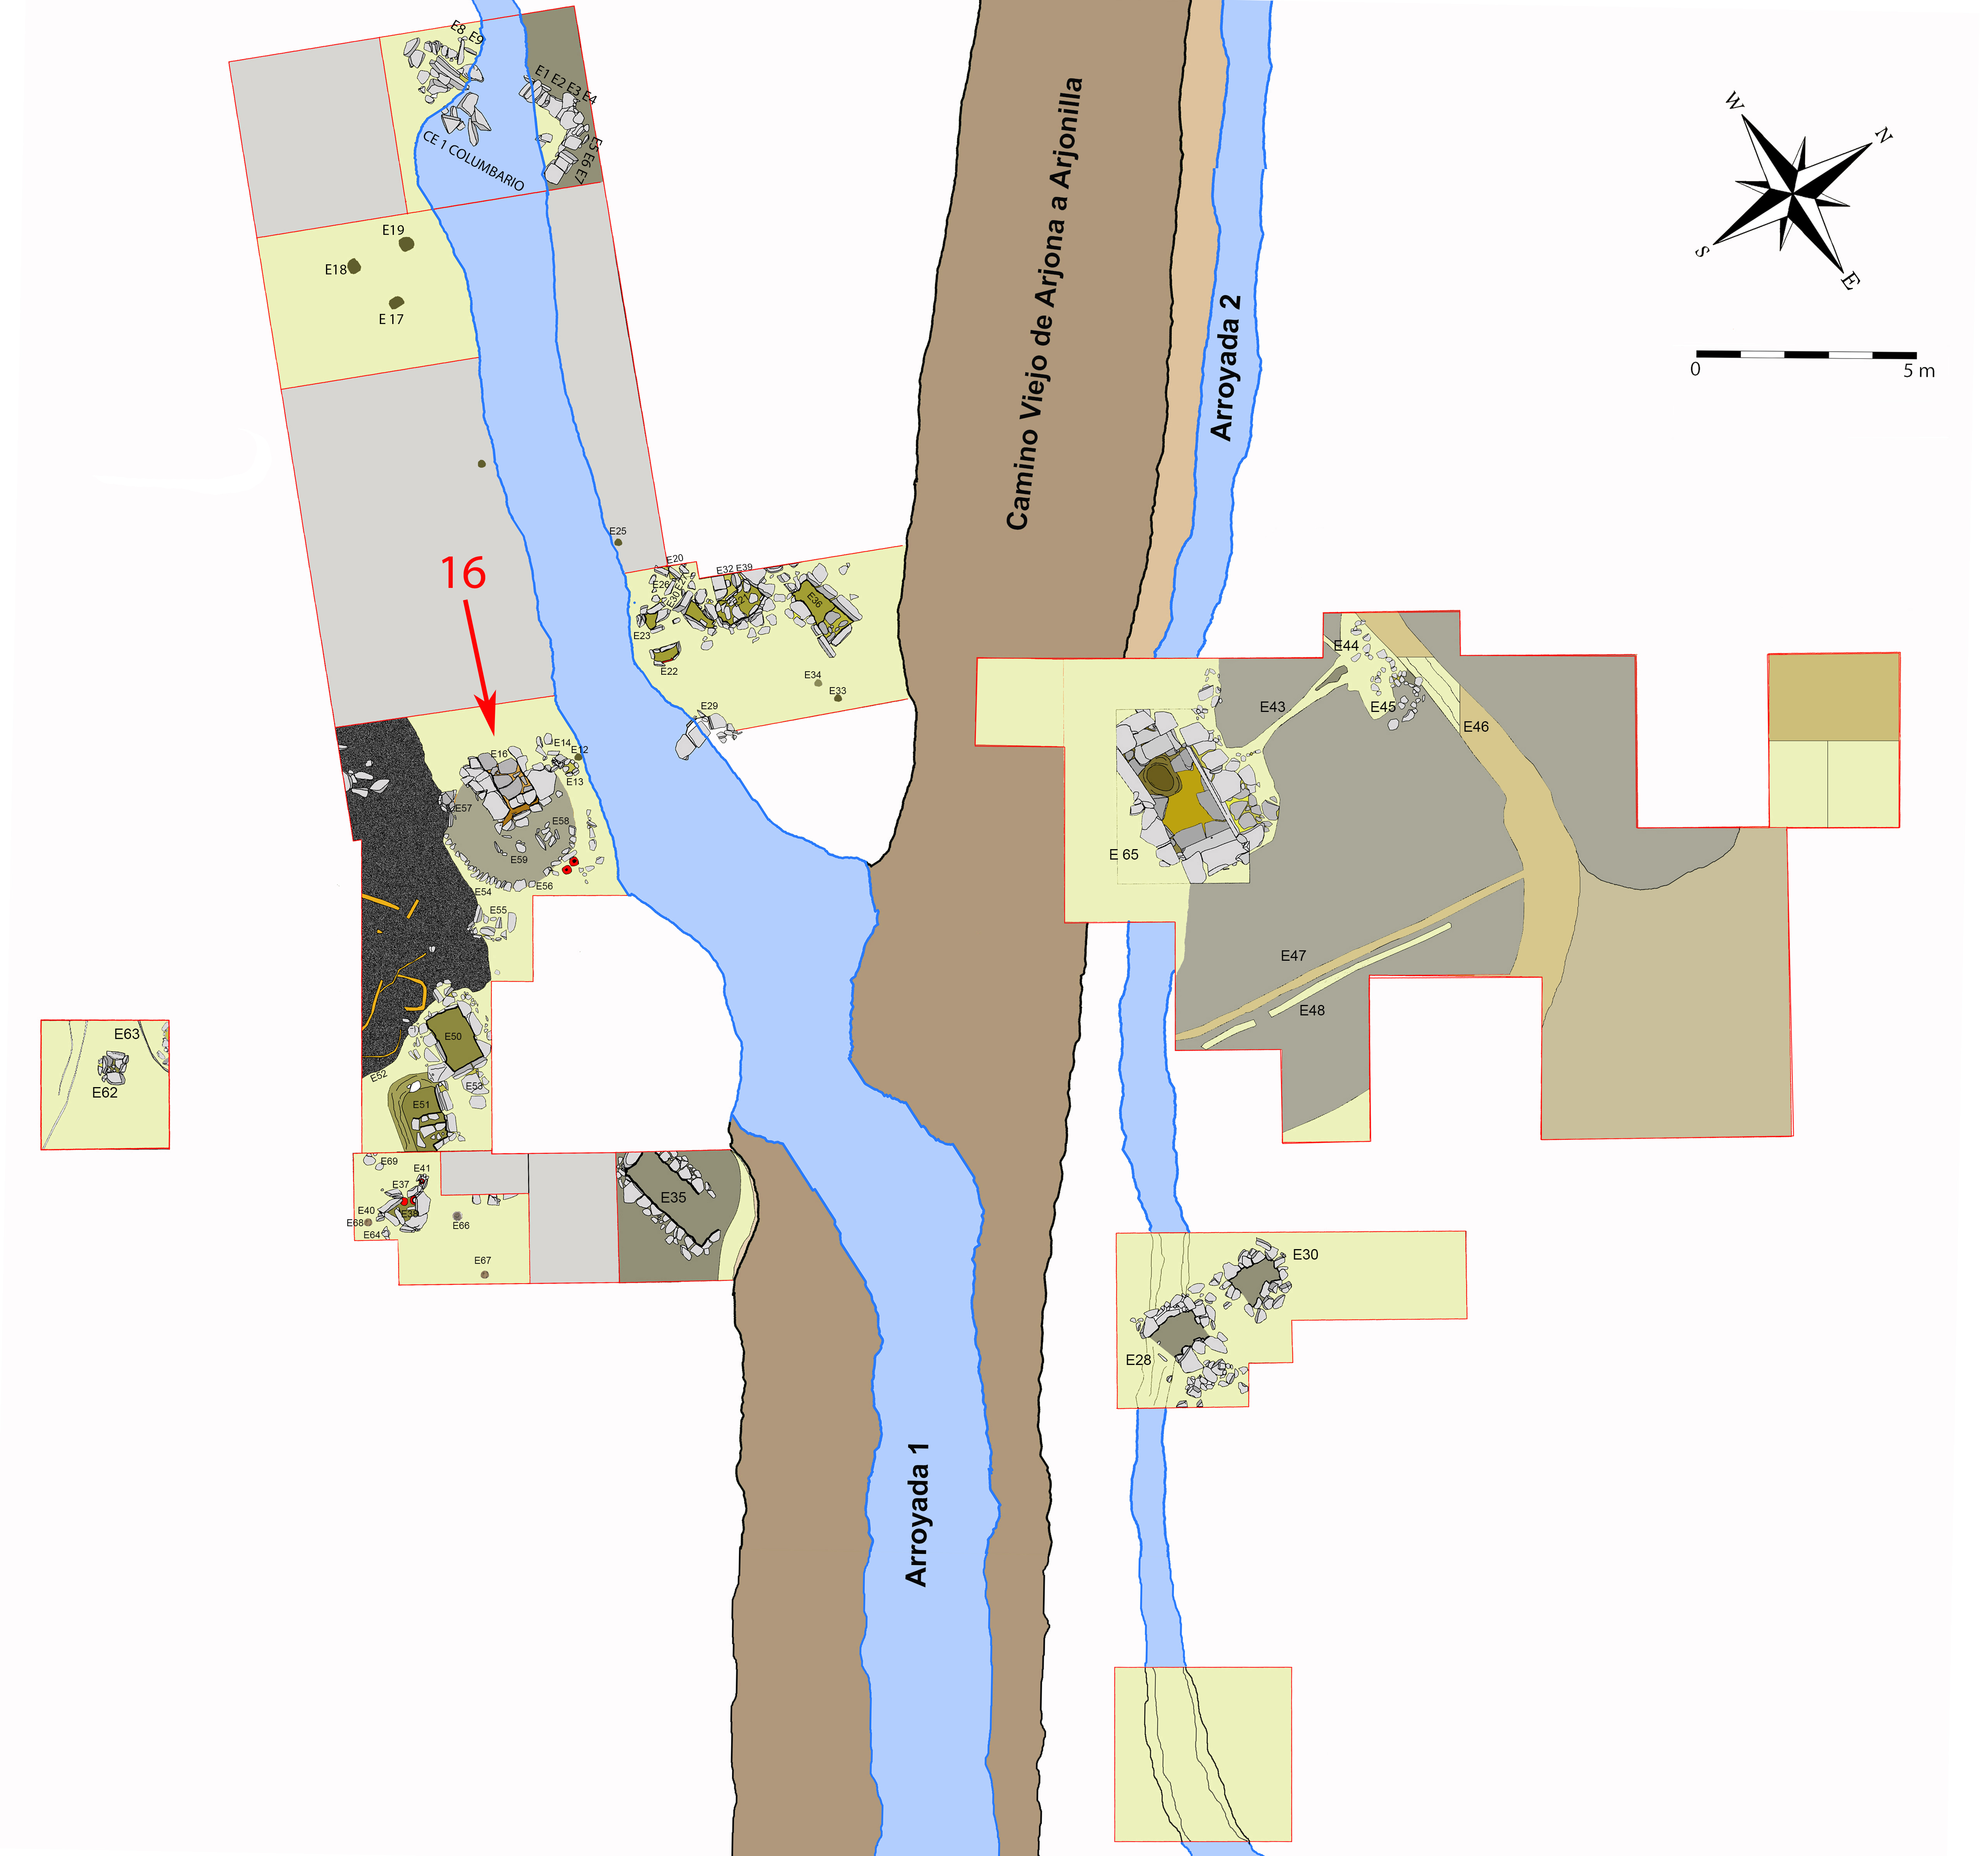 Plano general de la necrópolis de Piquía y localización de la tumba 66.